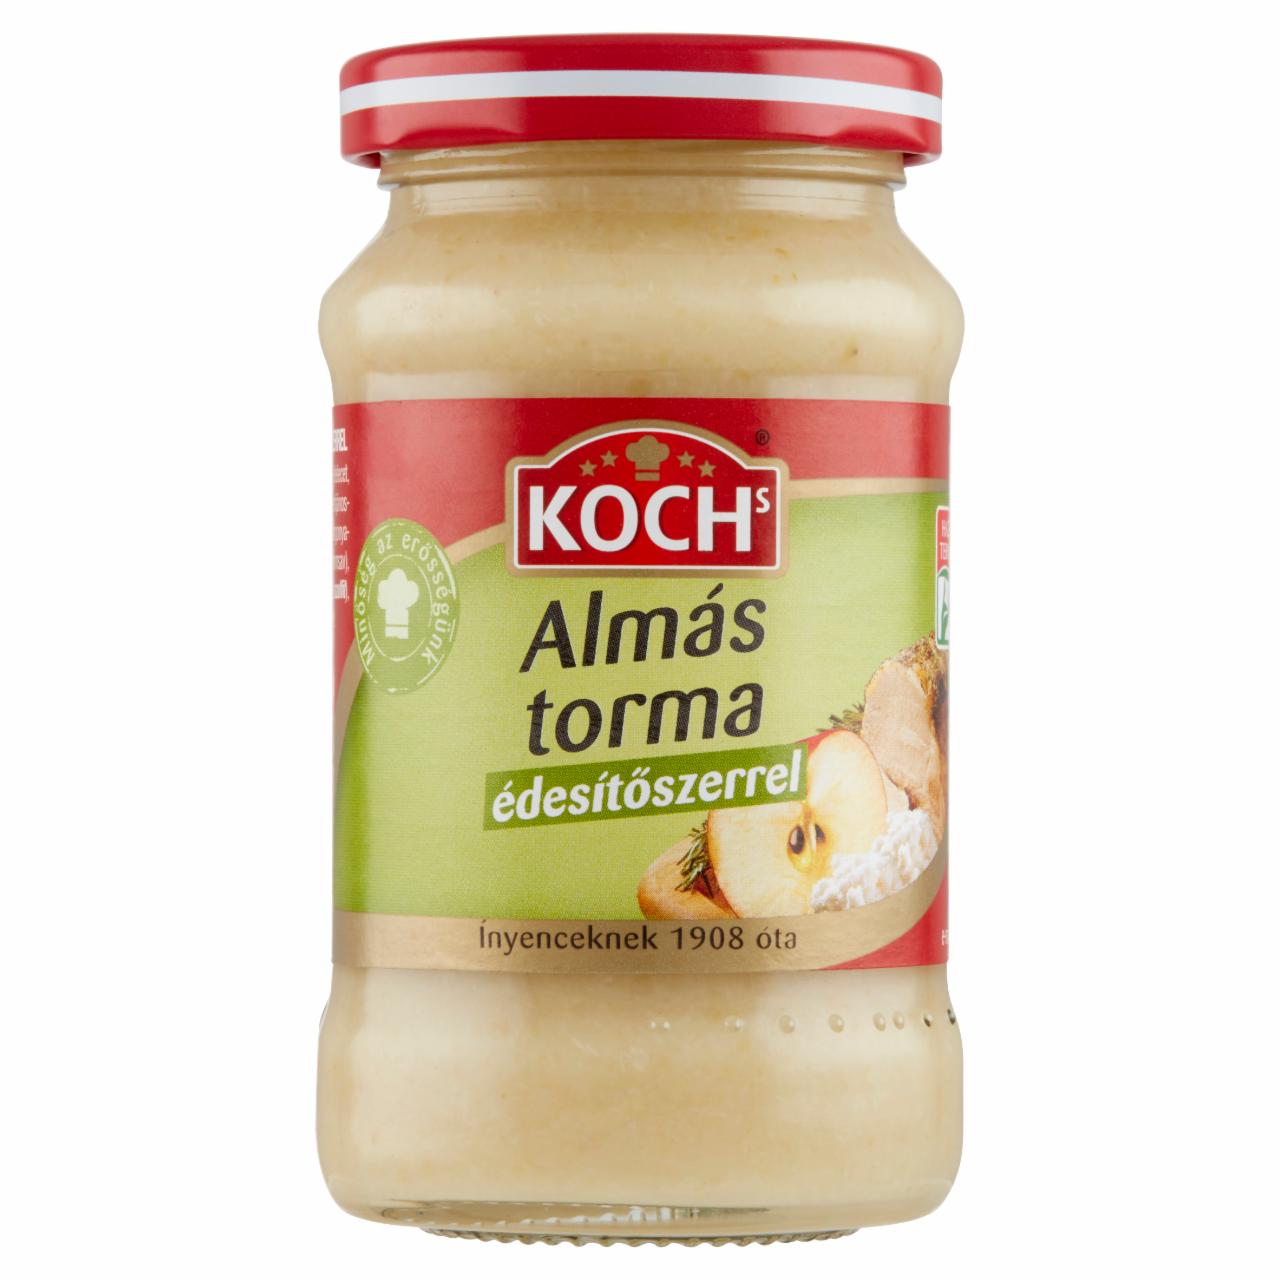 Képek - Koch's almás torma édesítőszerrel 200 g